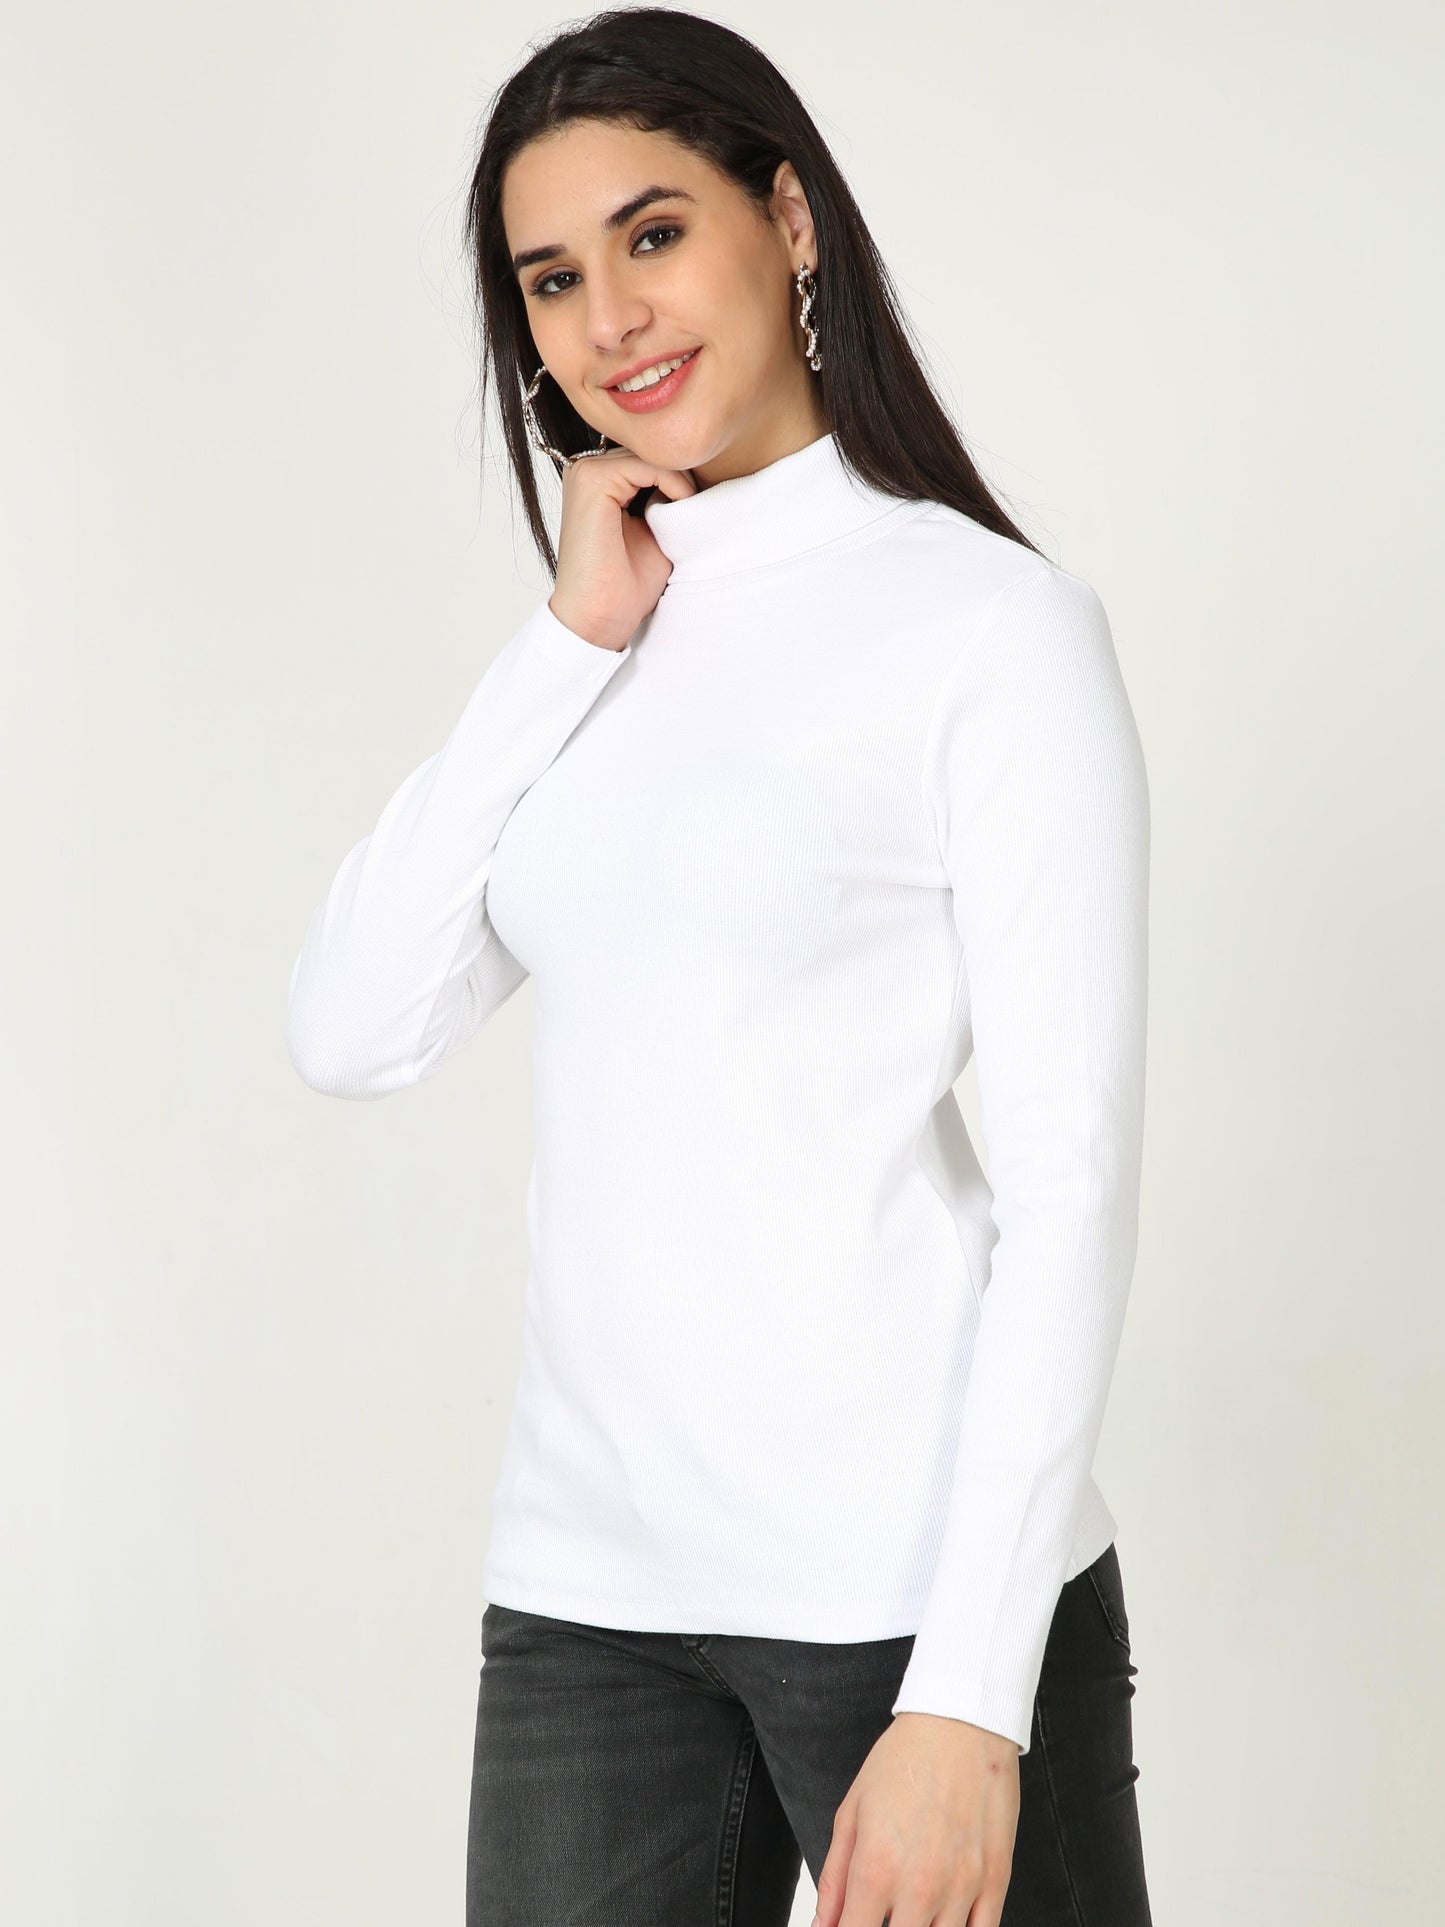 High Neck Full Sleeve Women's T-Shirt - White